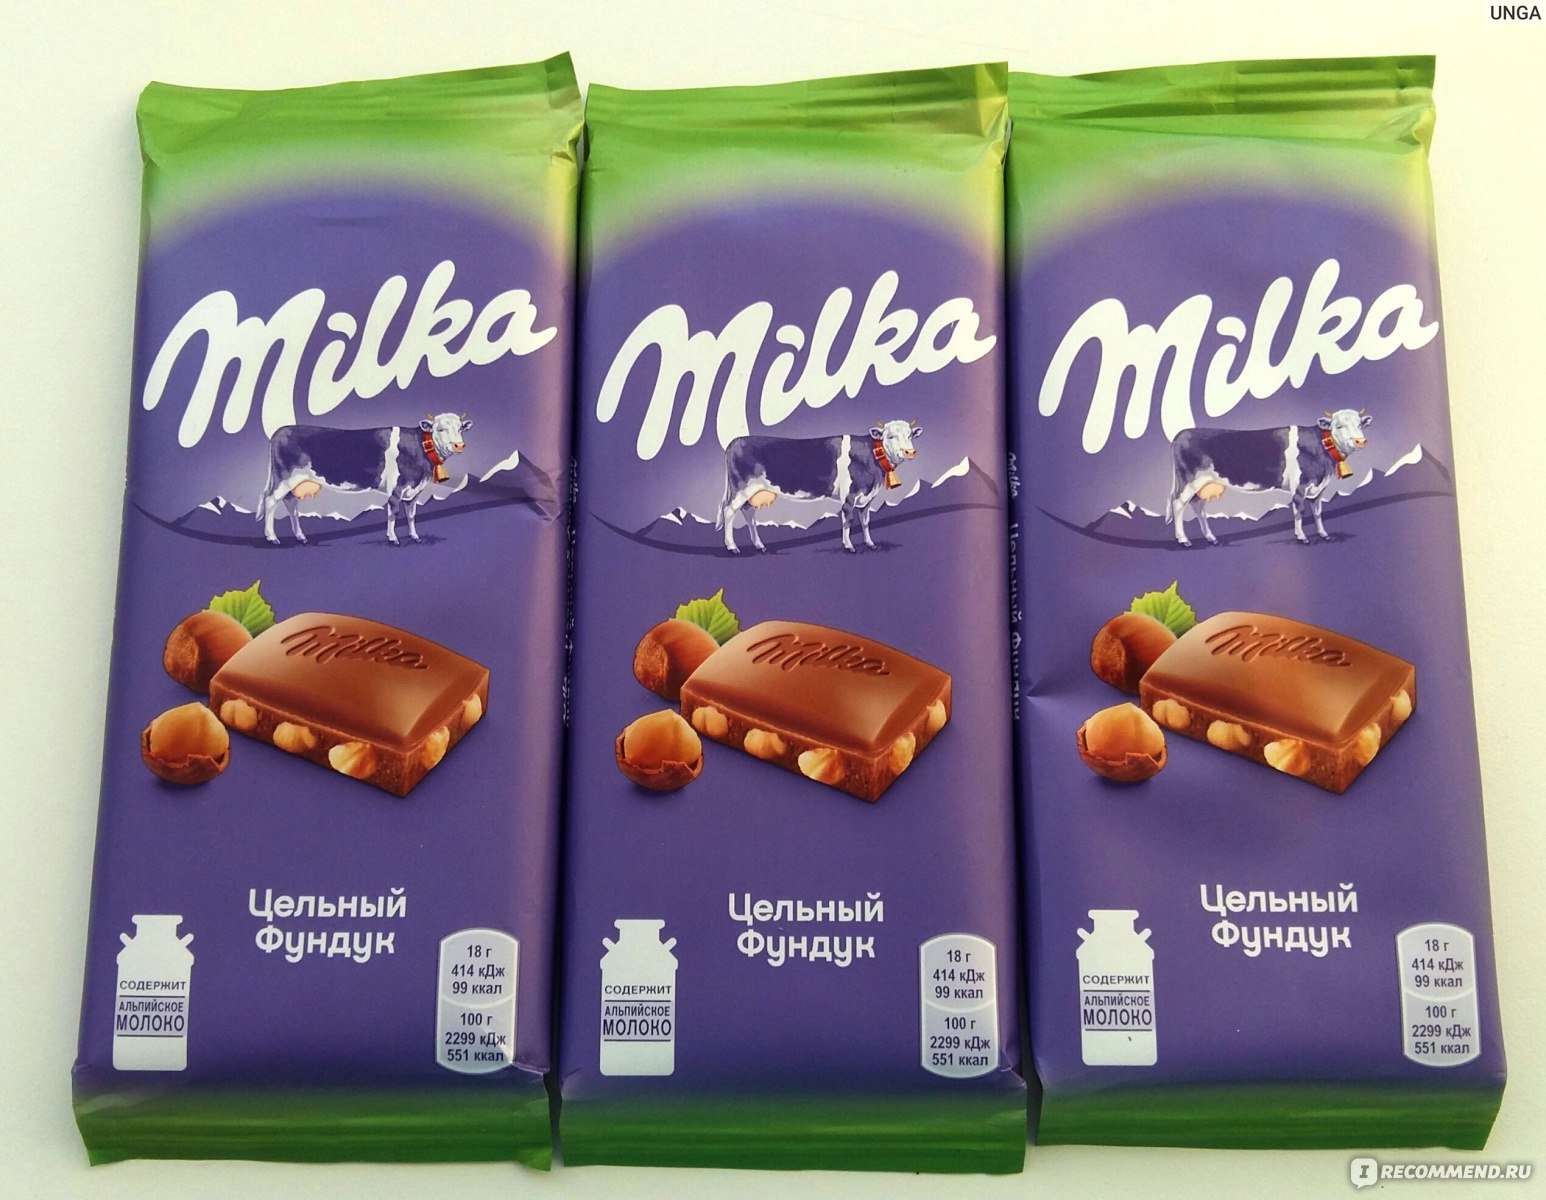 Как переводится милки. Milka шоколад с цельным фундуком. Шоколад Milka молочный с цельным фундуком. Milka цельный фундук. Milka цельный фундук батончик.